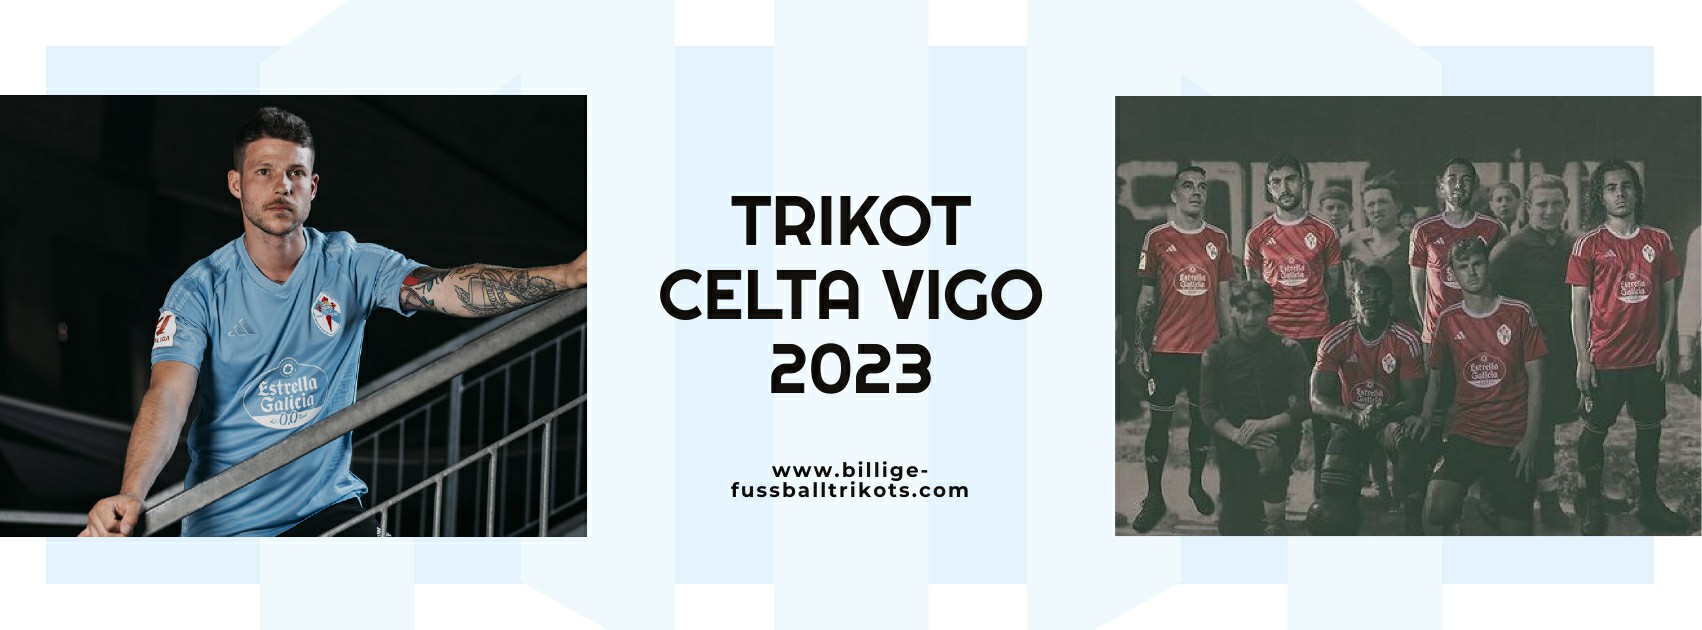 Celta Vigo Trikot 2023-2024